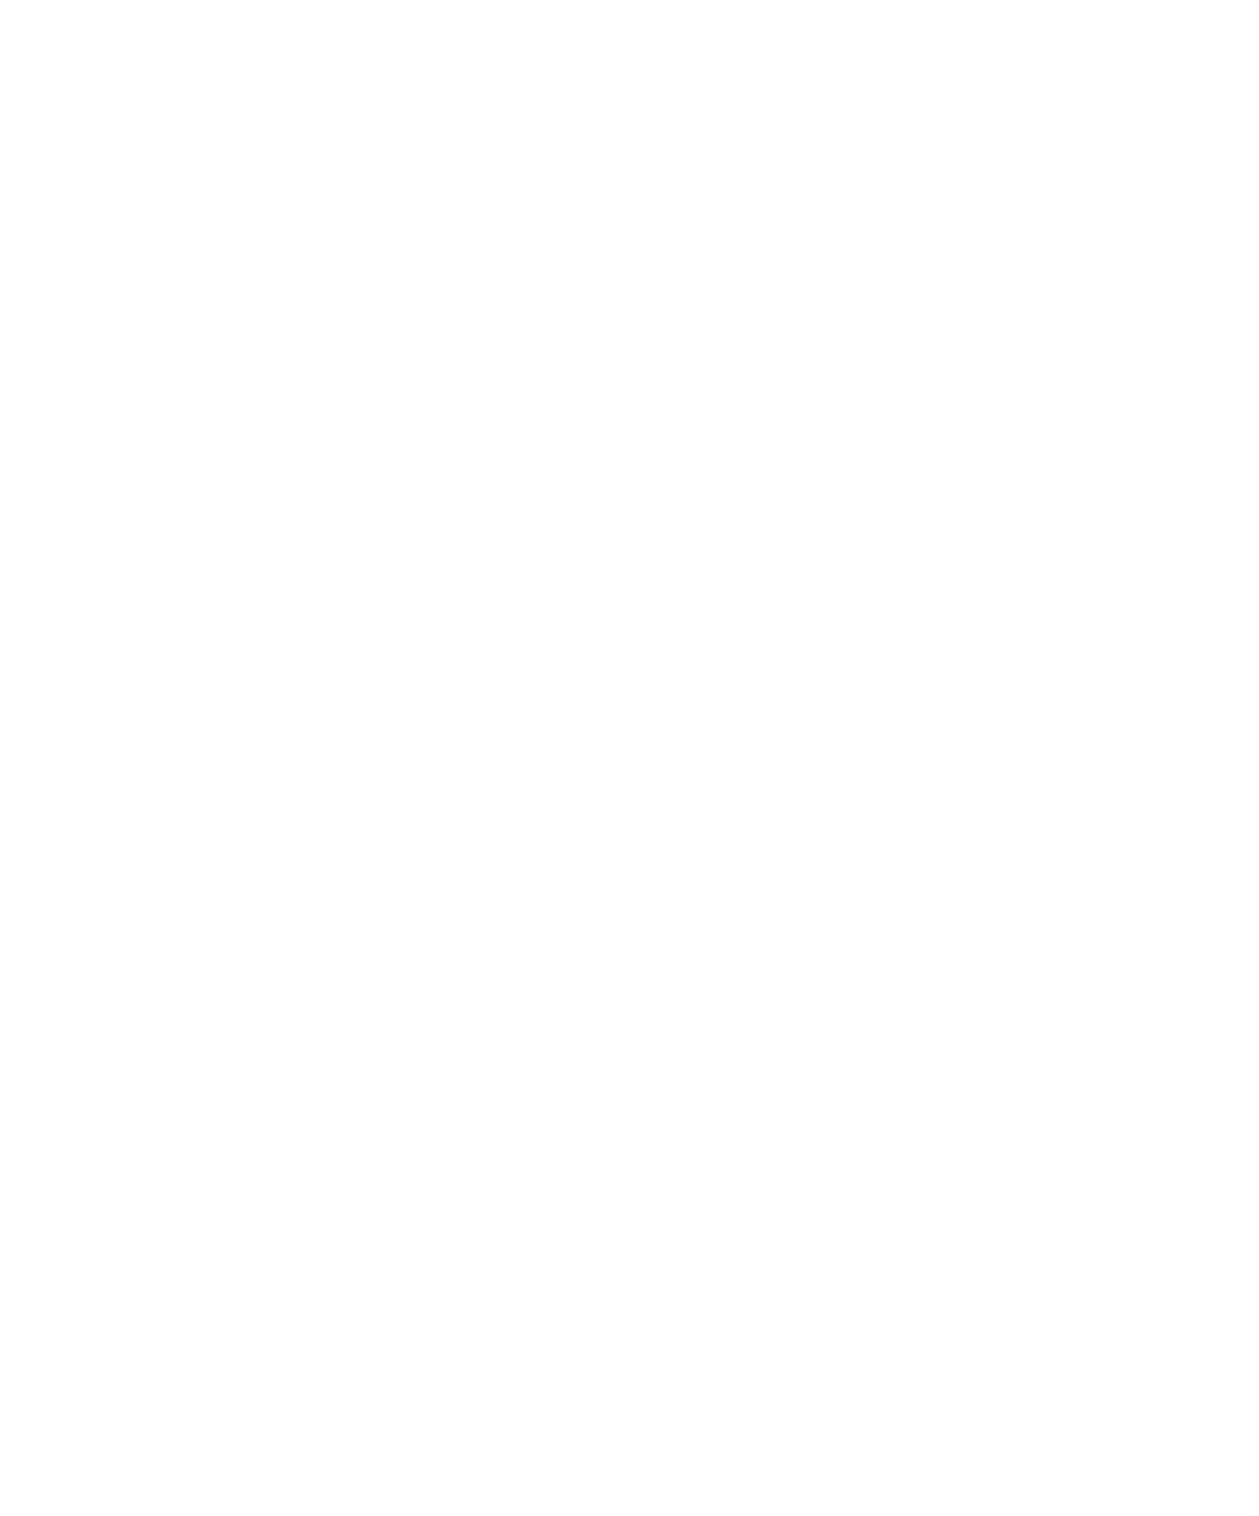 Betsson AB logo pour fonds sombres (PNG transparent)